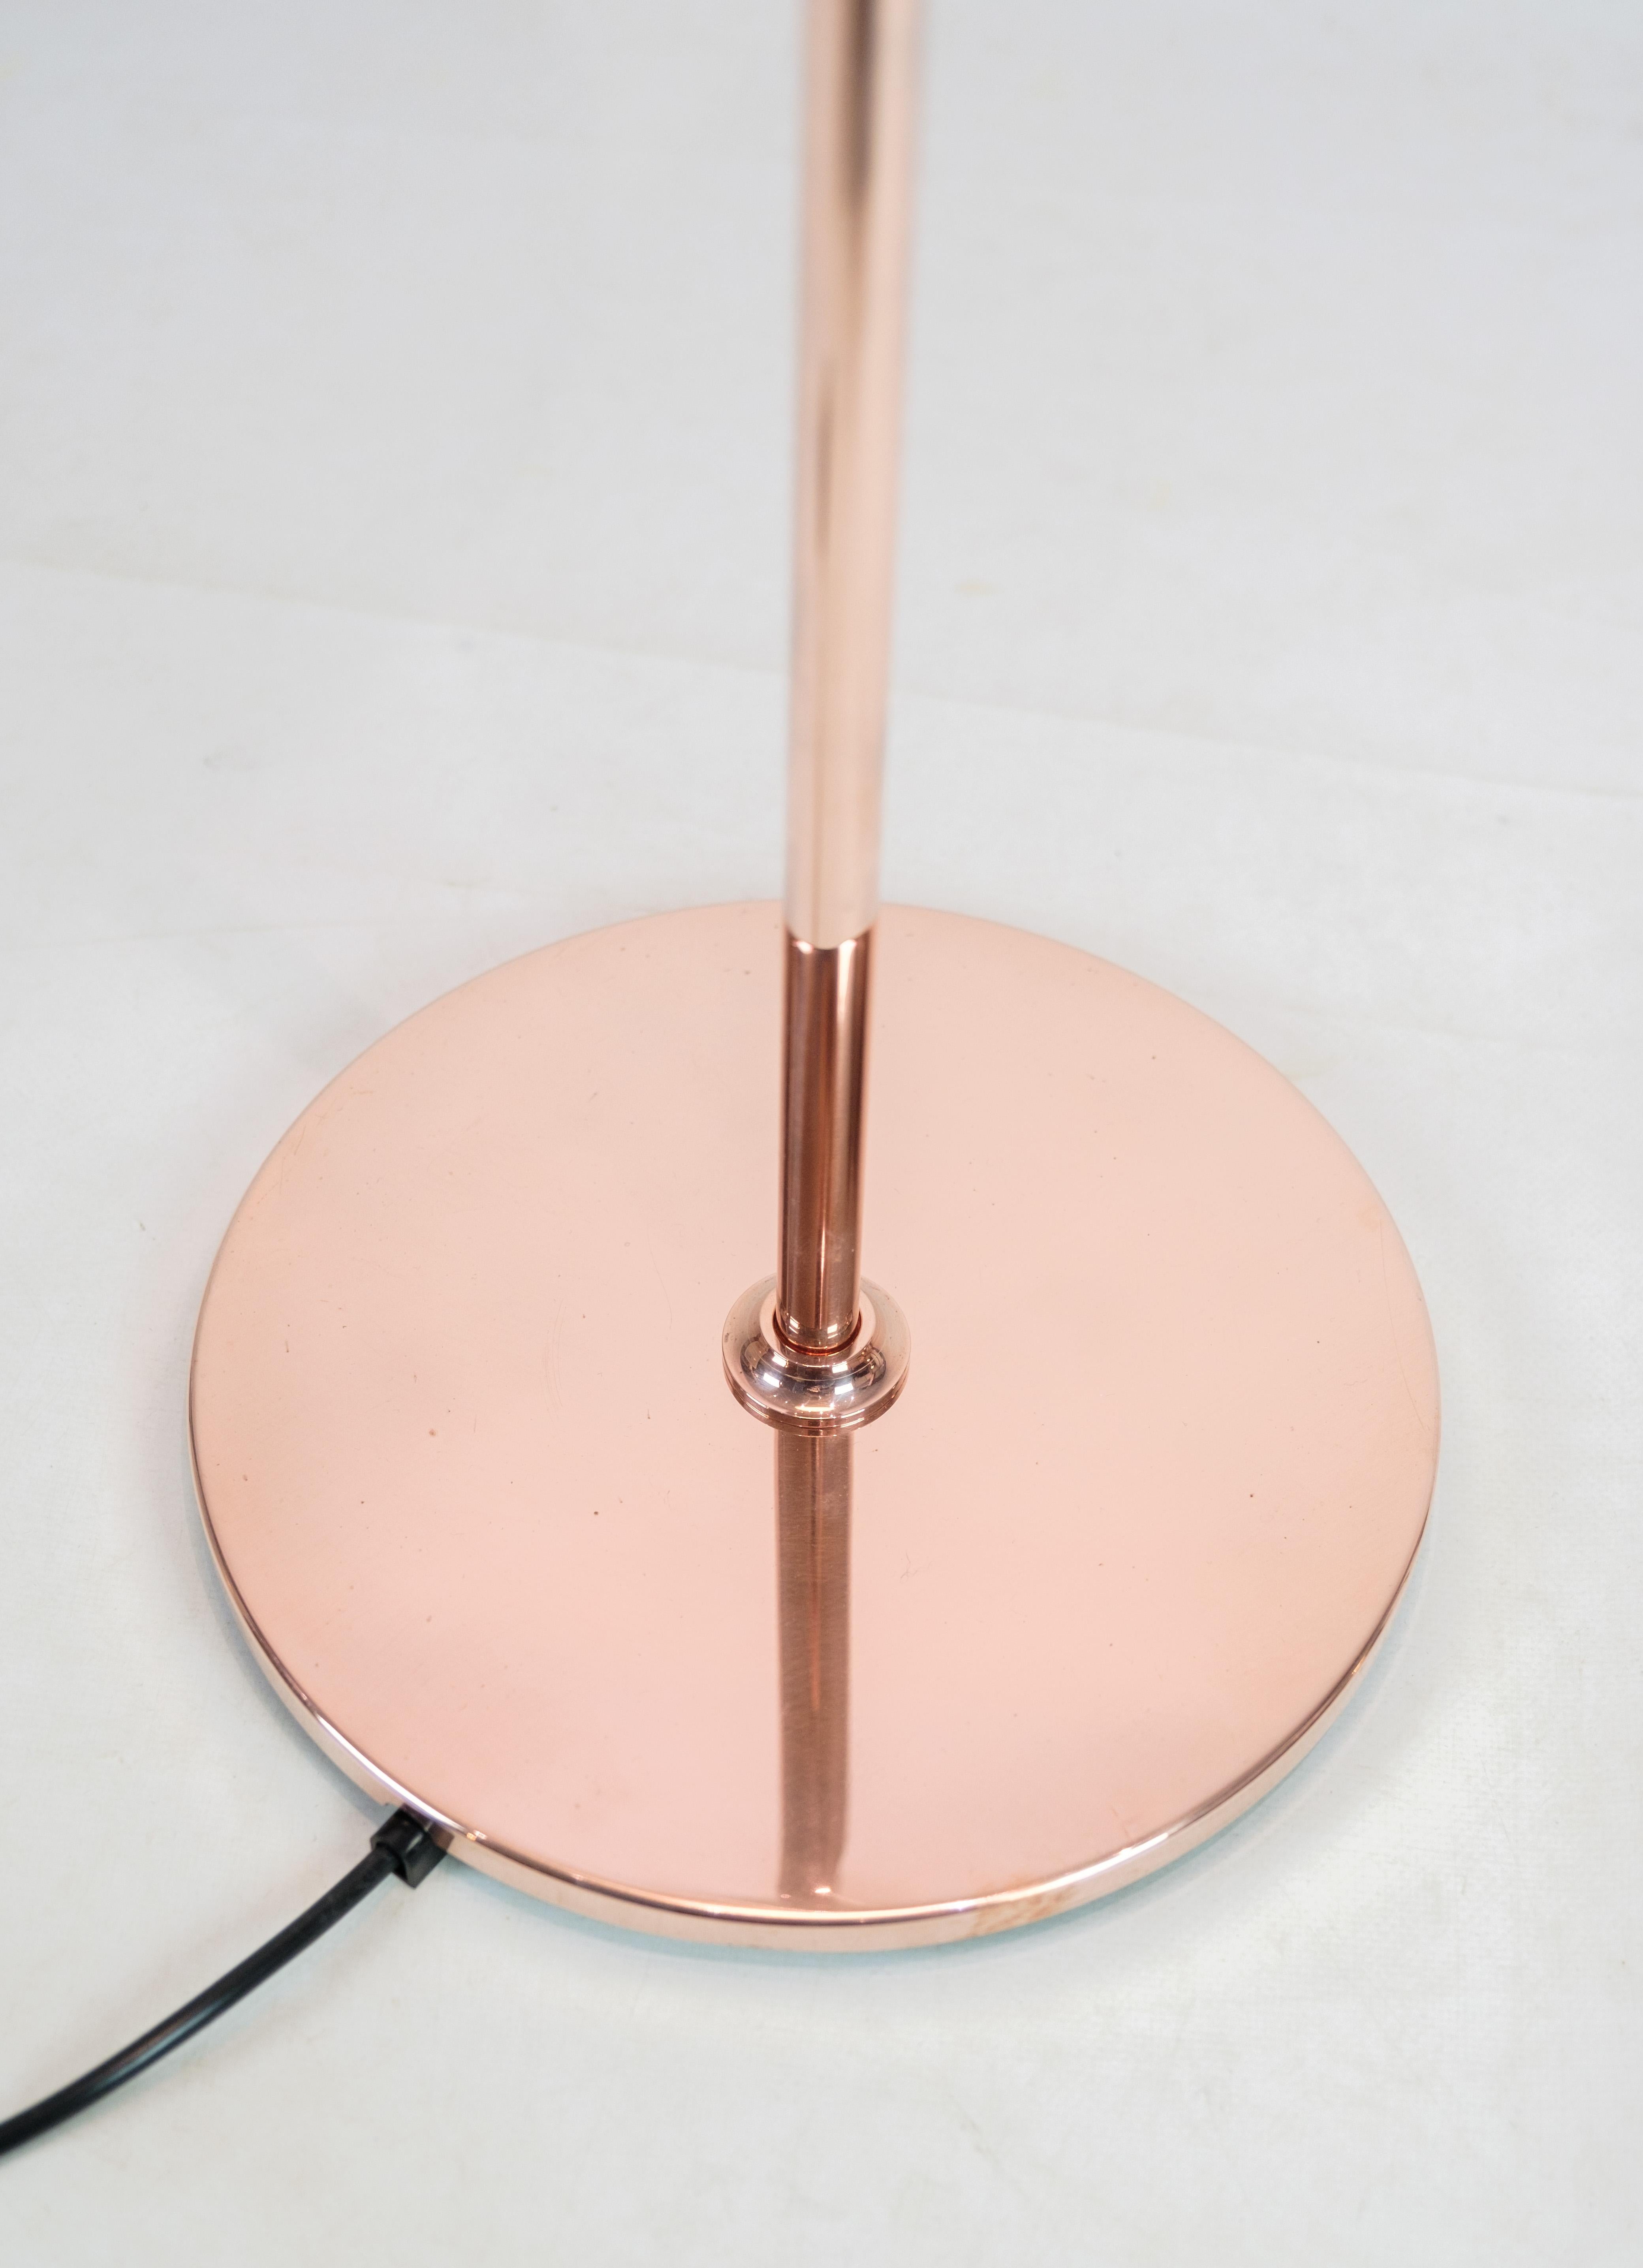 Lampadaire PH, modèle PH3½-2½, édition limitée en cuivre, conçu par Poul Henningsen et produit par Louis Poulsen. La lampe possède un abat-jour supérieur en cuivre et deux abat-jours inférieurs en verre opale blanc. La lampe n'a été vendue qu'entre